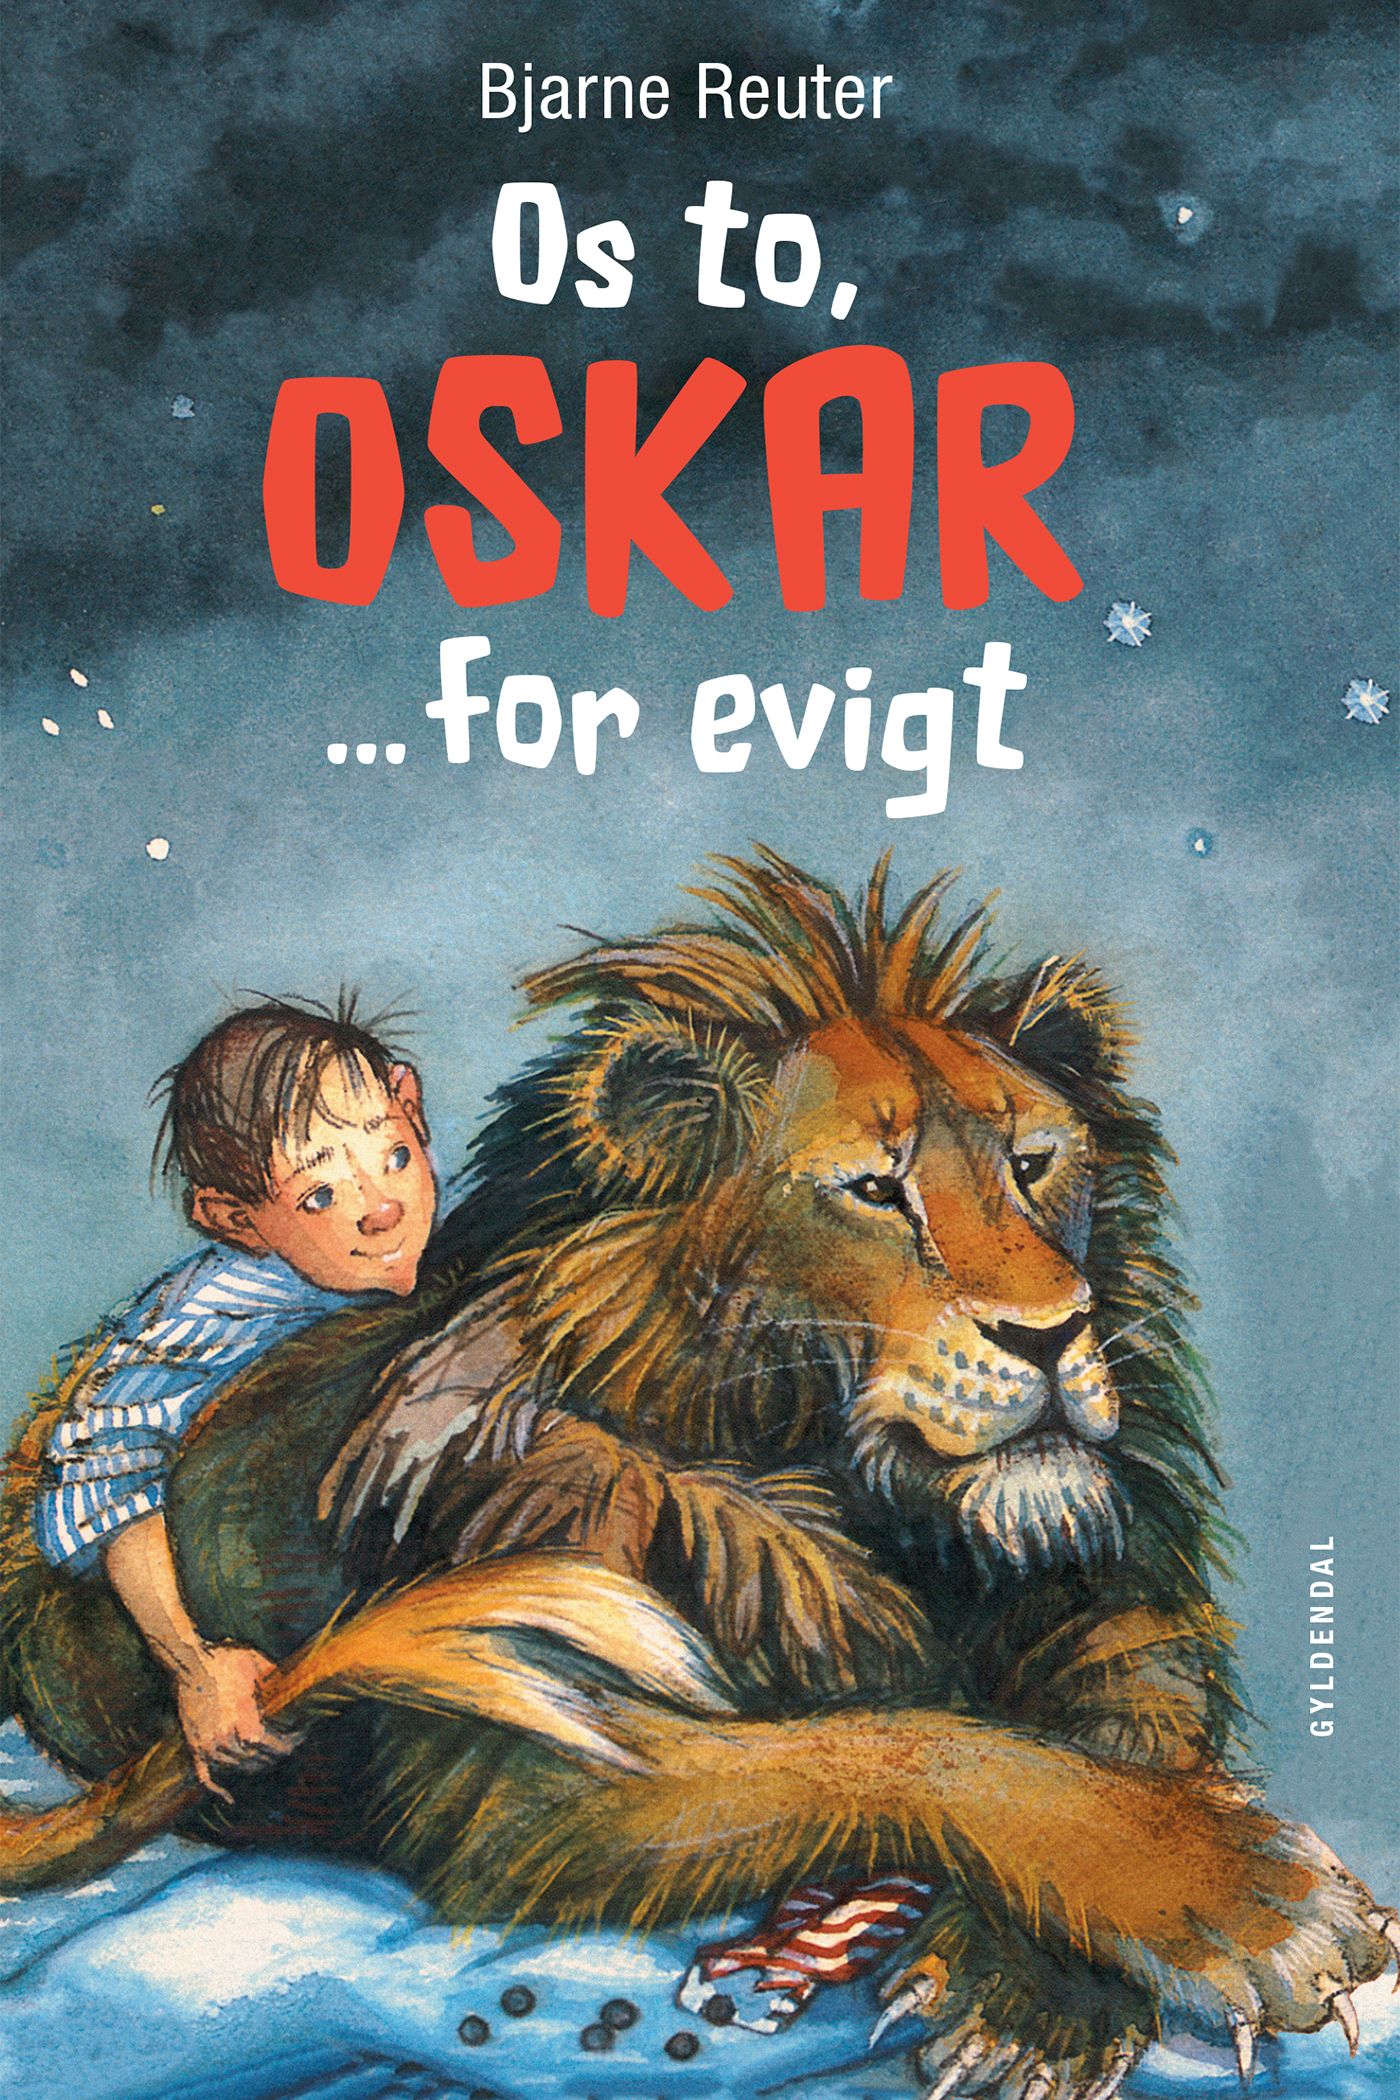 Os to, Oskar ... for evigt, e-bog af Bjarne Reuter